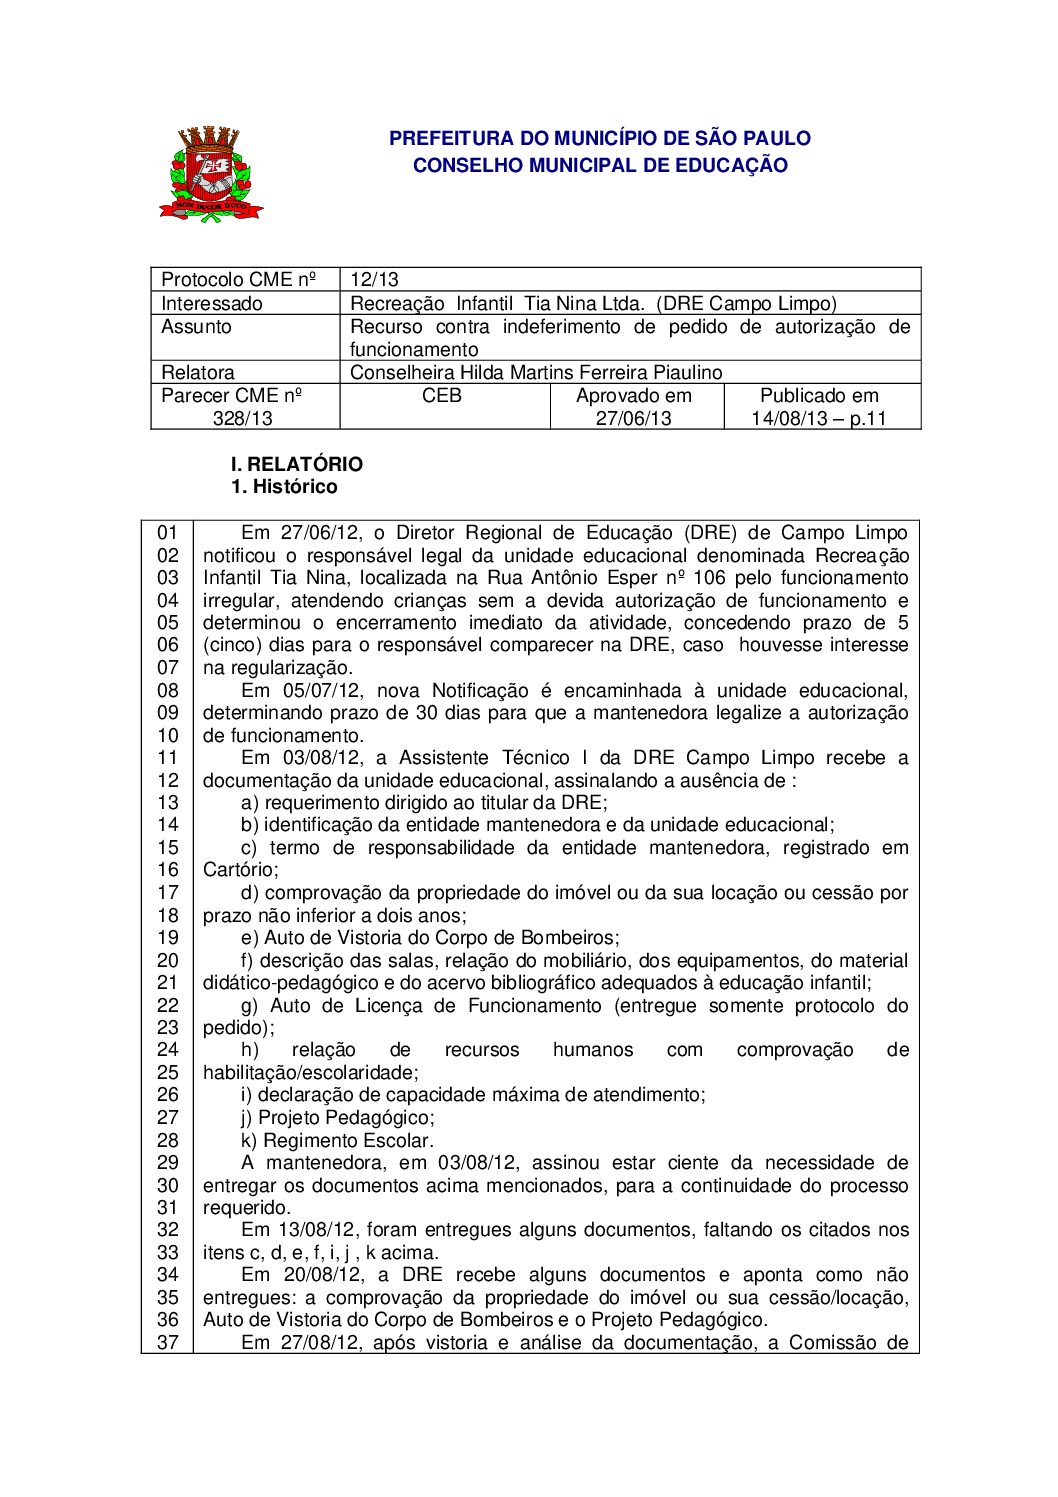 Parecer CME nº 328/2013 - Recreação Infantil Tia Nina Ltda (DRE Campo Limpo) - Recurso contra indeferimento de pedido de autorização de funcionamento 